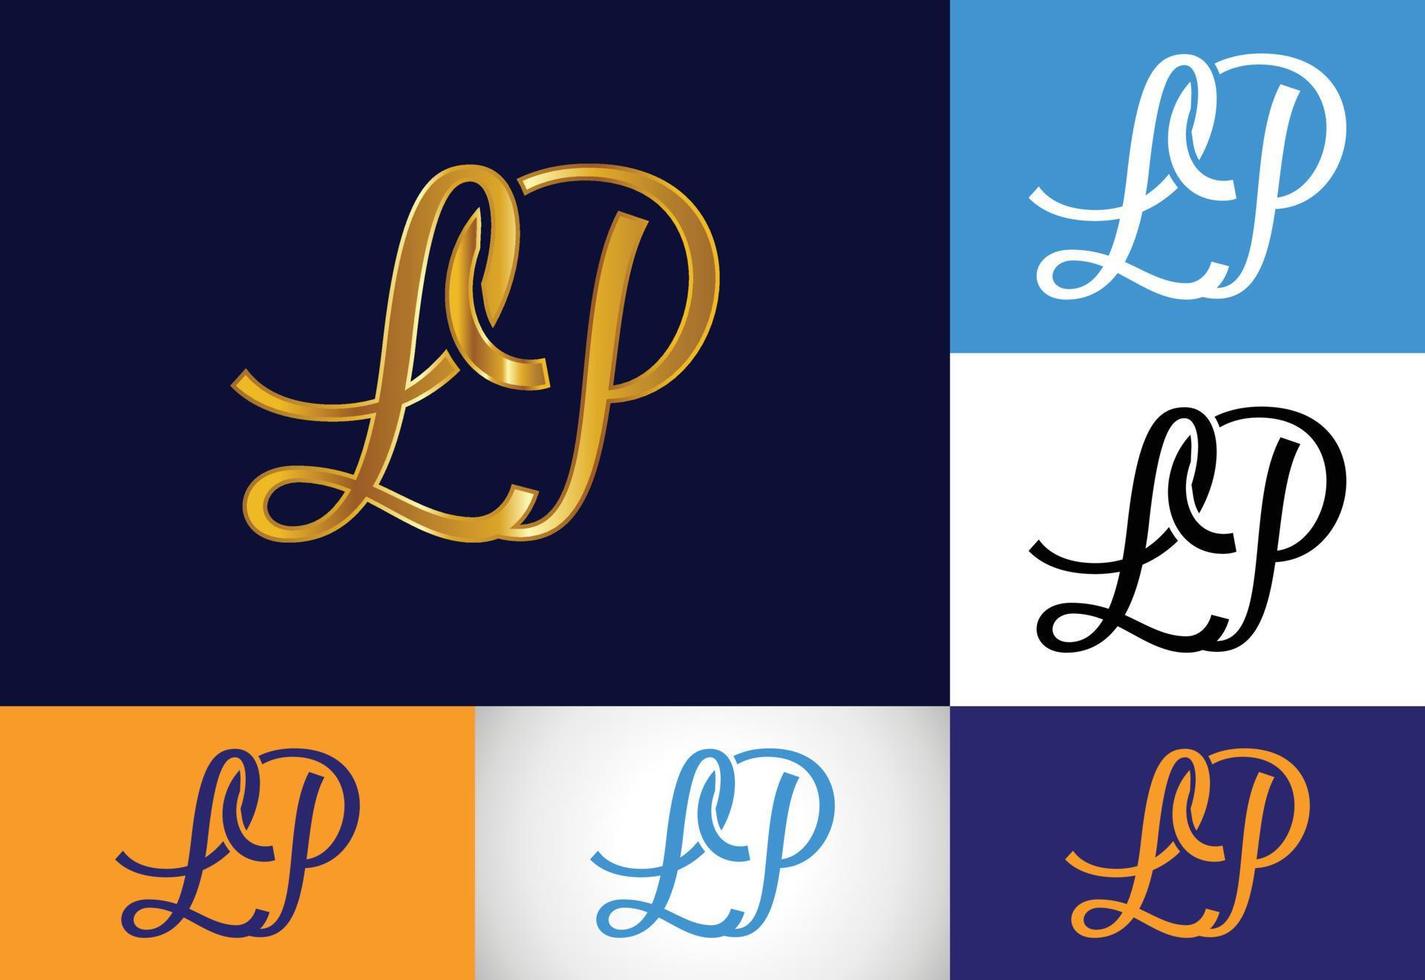 första monogram bokstaven lp logotyp design vektor. grafisk alfabetsymbol för företagsverksamhet vektor